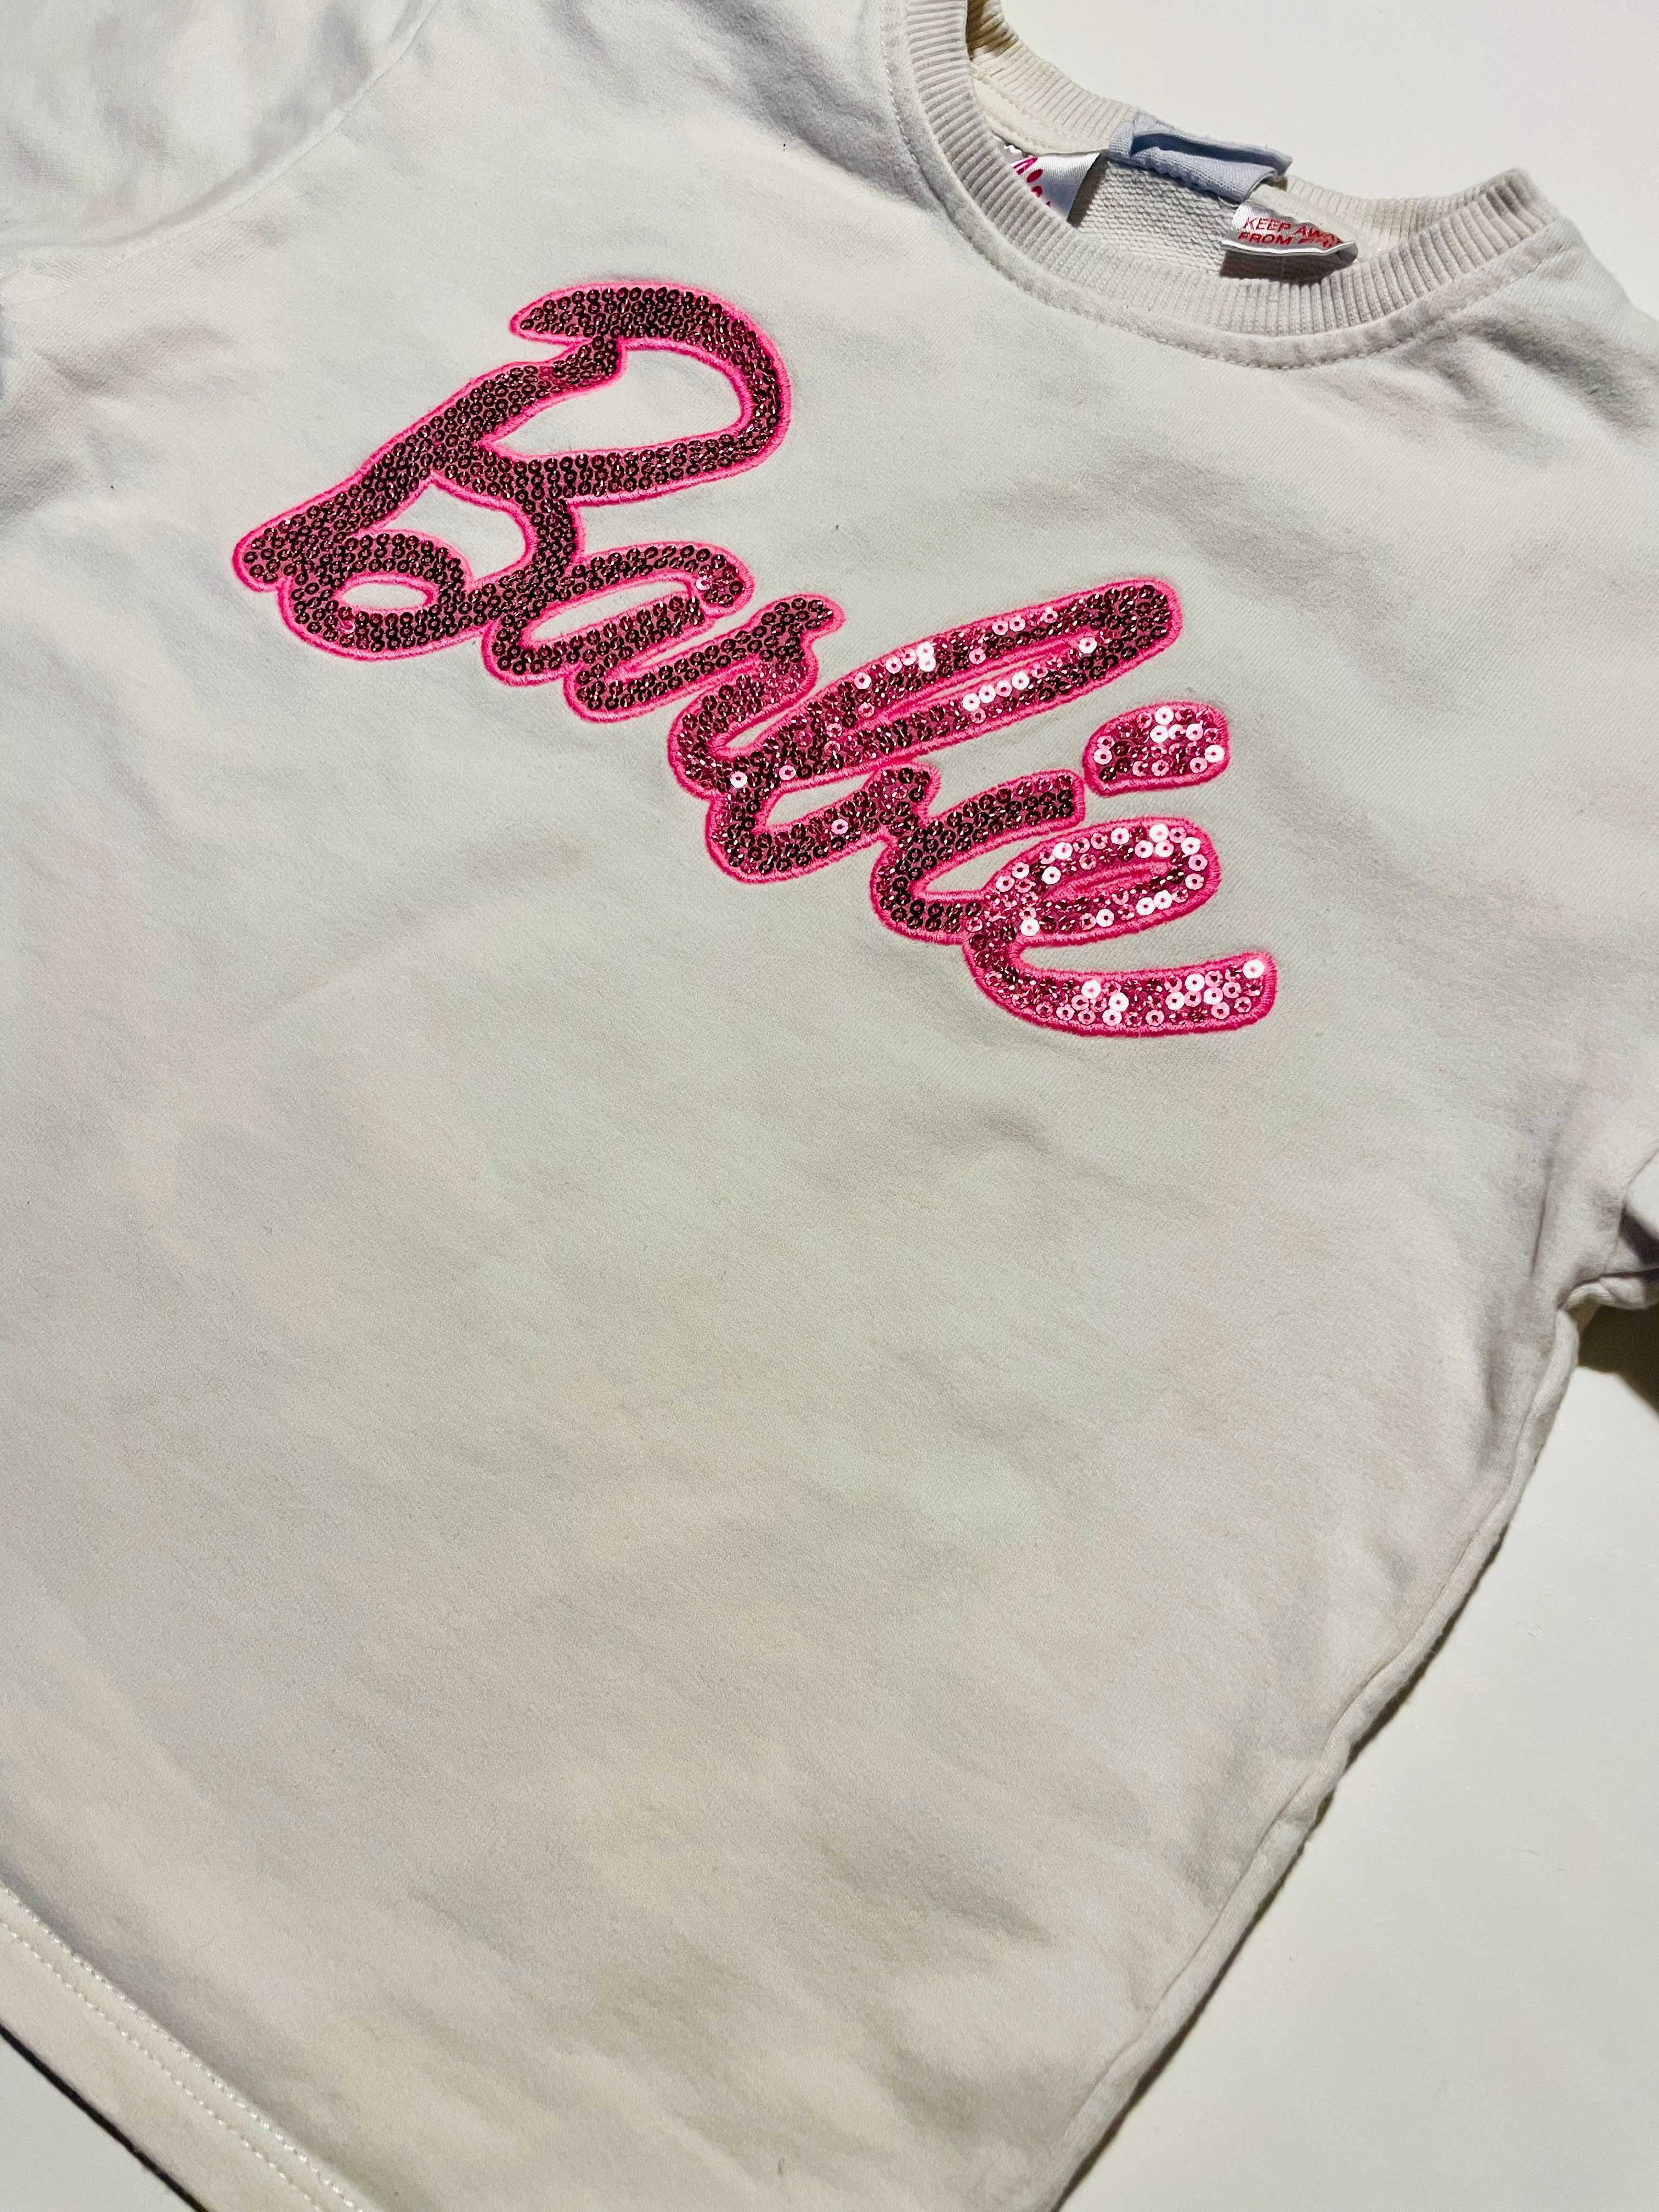 Koszulka / Bluzka z cenikami BARBIE™ MATTEL, ZARA, rozmiar 110